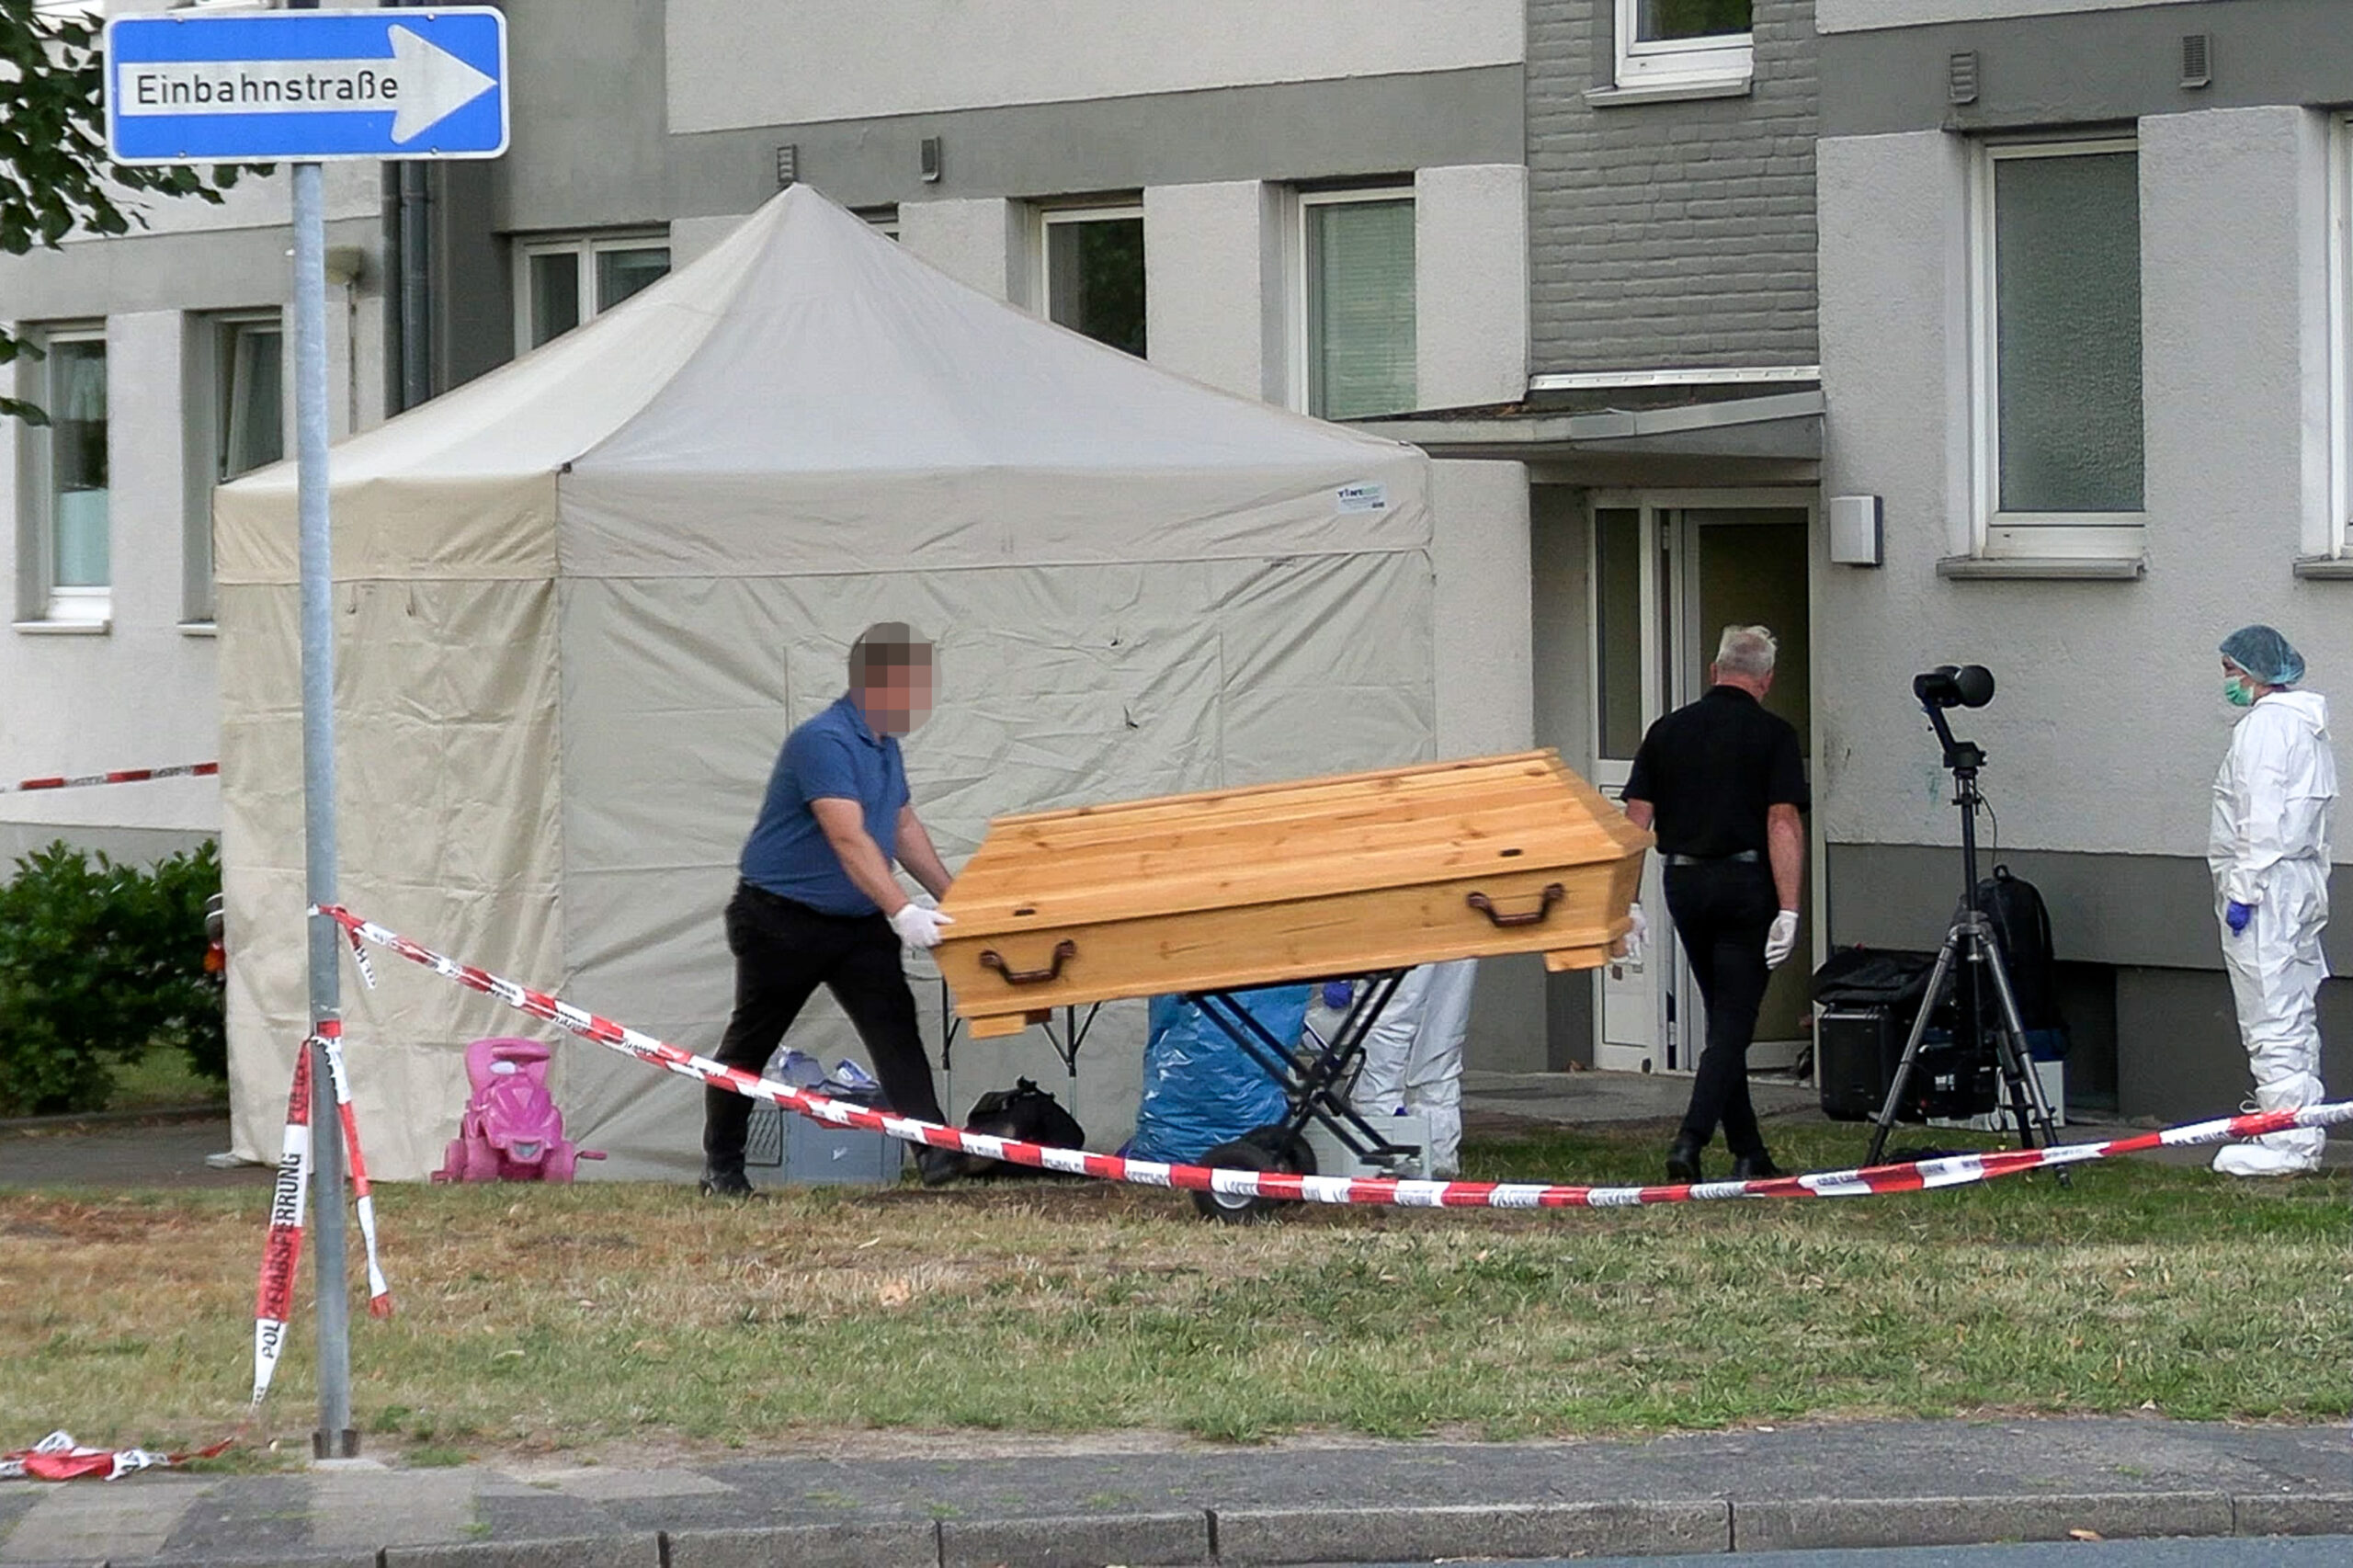 In Niedersachsen kam es am Mittwoch zu einem tödlichen Messerangriff.